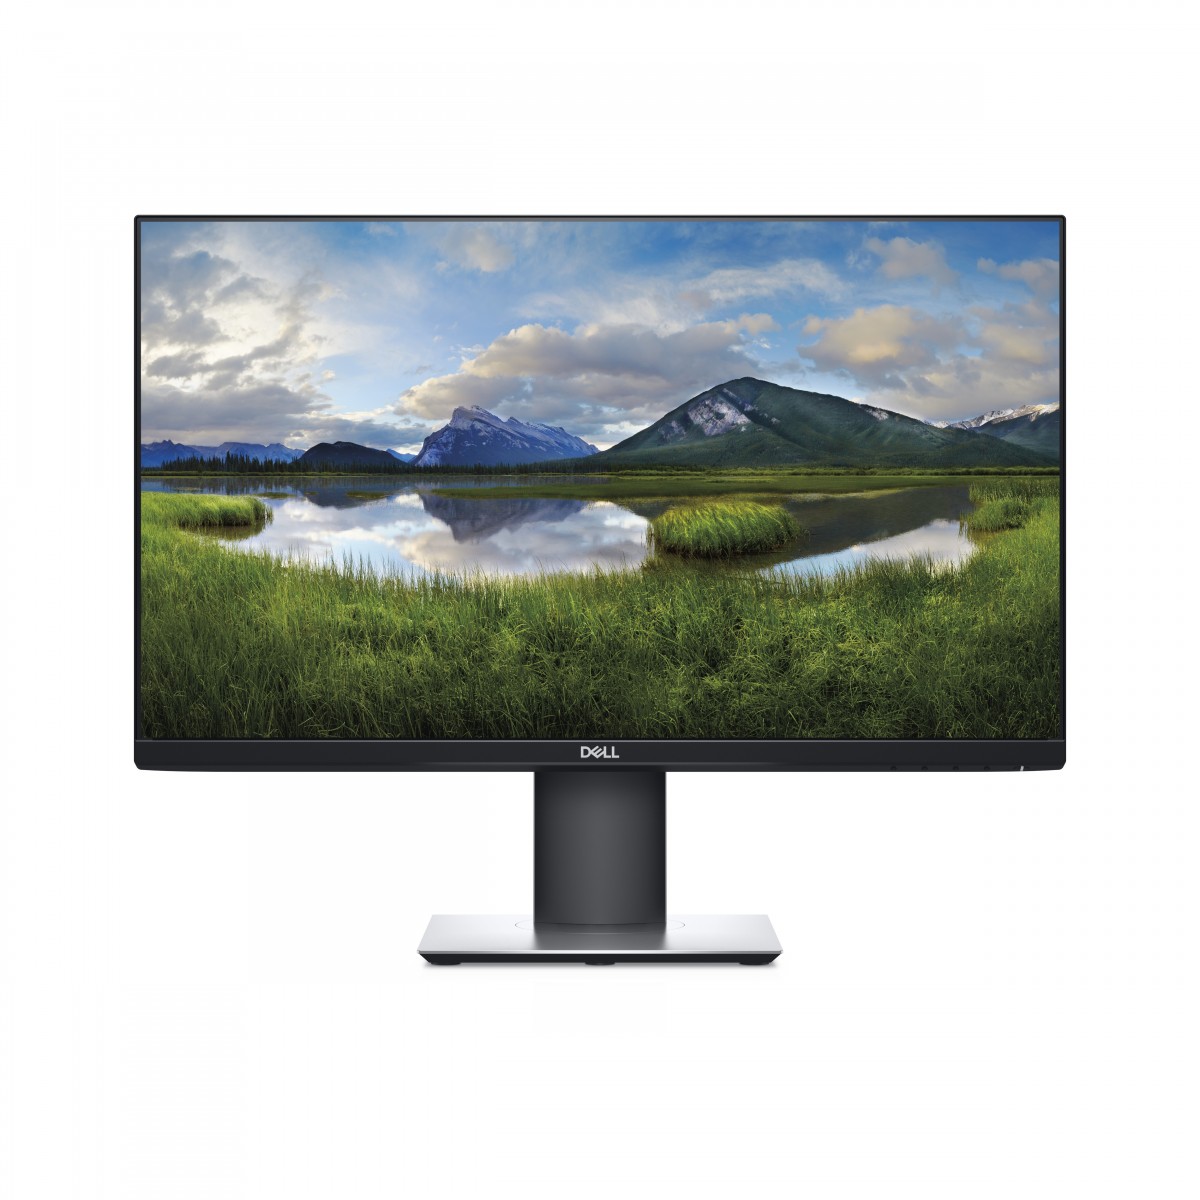 Dell P2419H - 61 cm (24) - 1920 x 1080 pixels - Full HD - LCD - 8 ms - Black